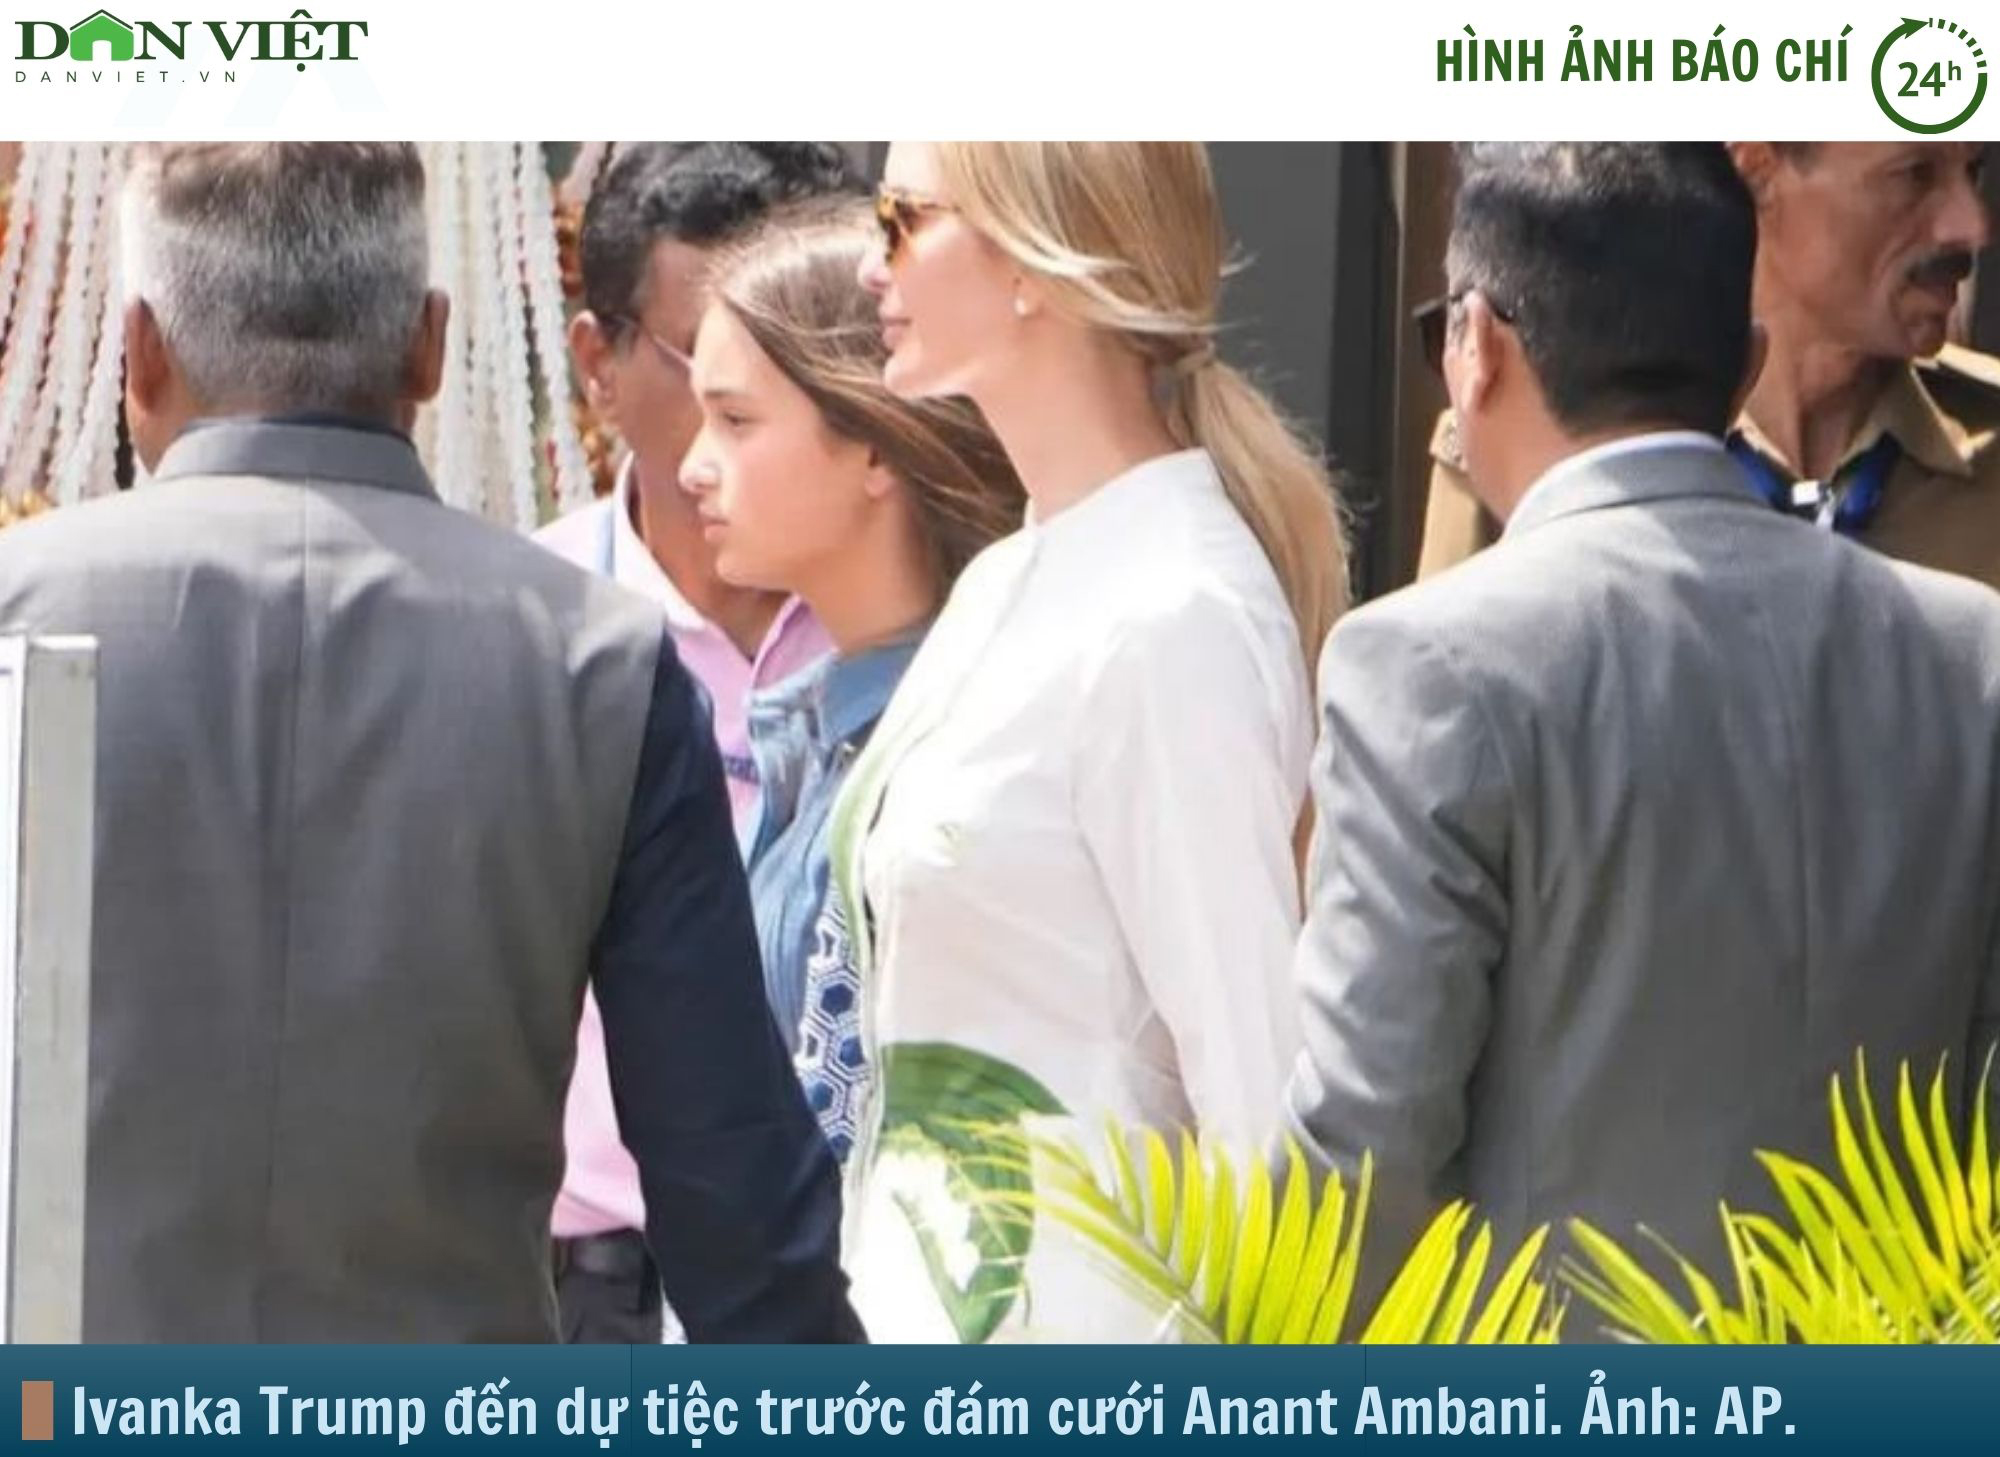 Hình ảnh báo chí 24h: Ivanka Trump đến Ấn Độ dự tiệc con trai tỷ phú giàu nhất châu Á- Ảnh 1.